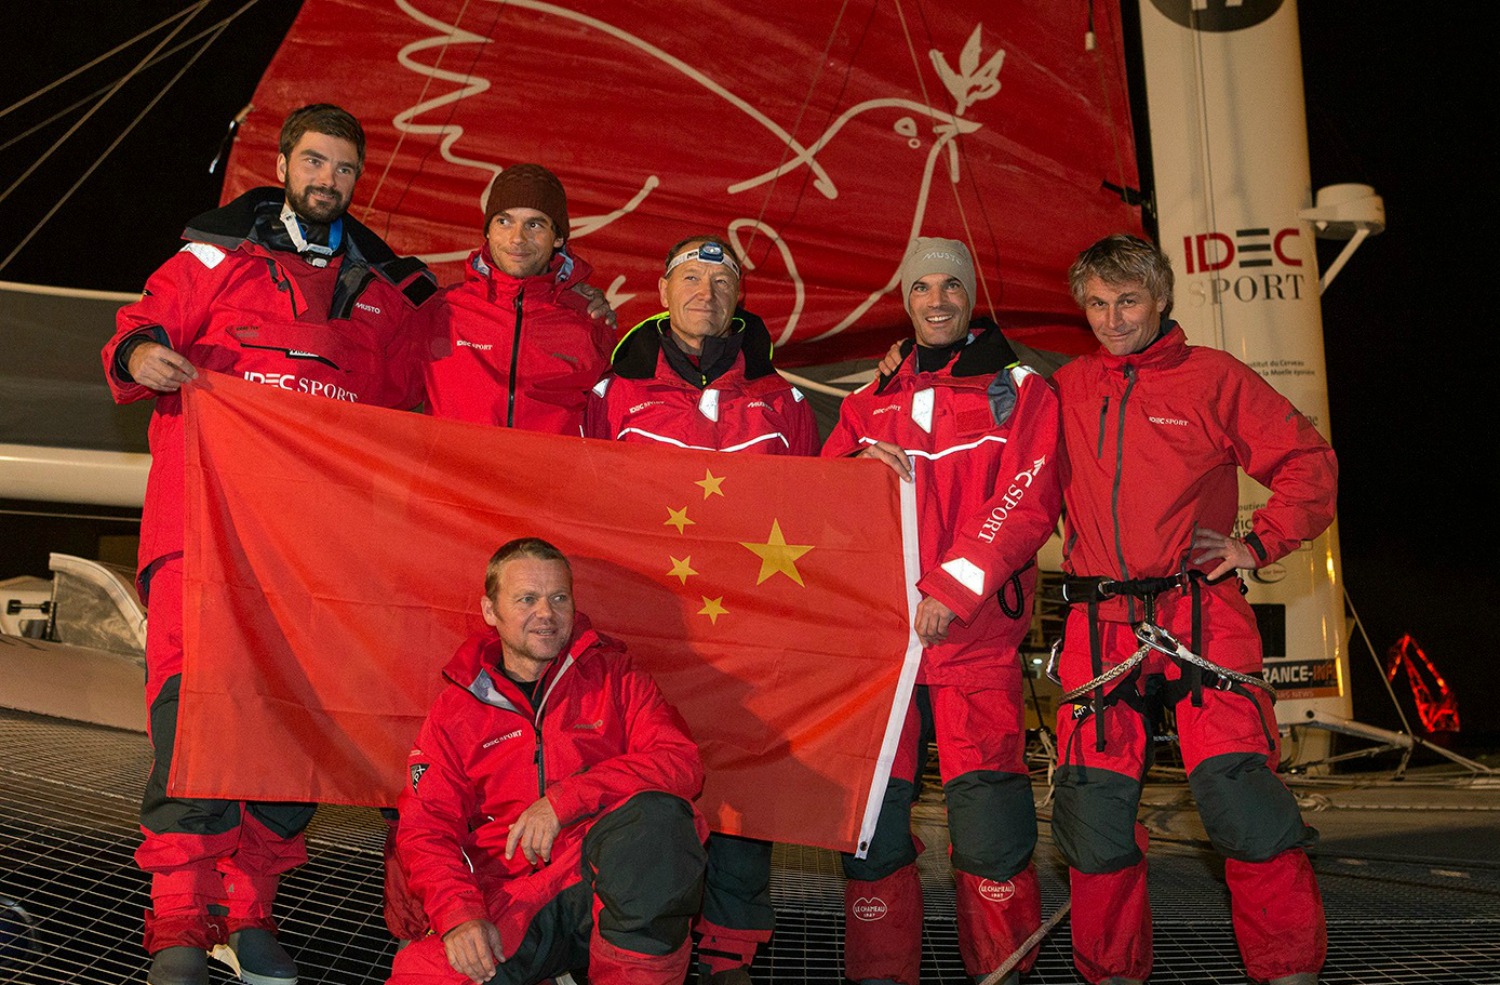 La tripulación del IDEC Sport en Brest, minutos antes de zarpar, rindiendo homenaje al navegante chino Guo Chuan, recientemente desaparecido mientras intentaba el Record entre San Francisco y Pekín.